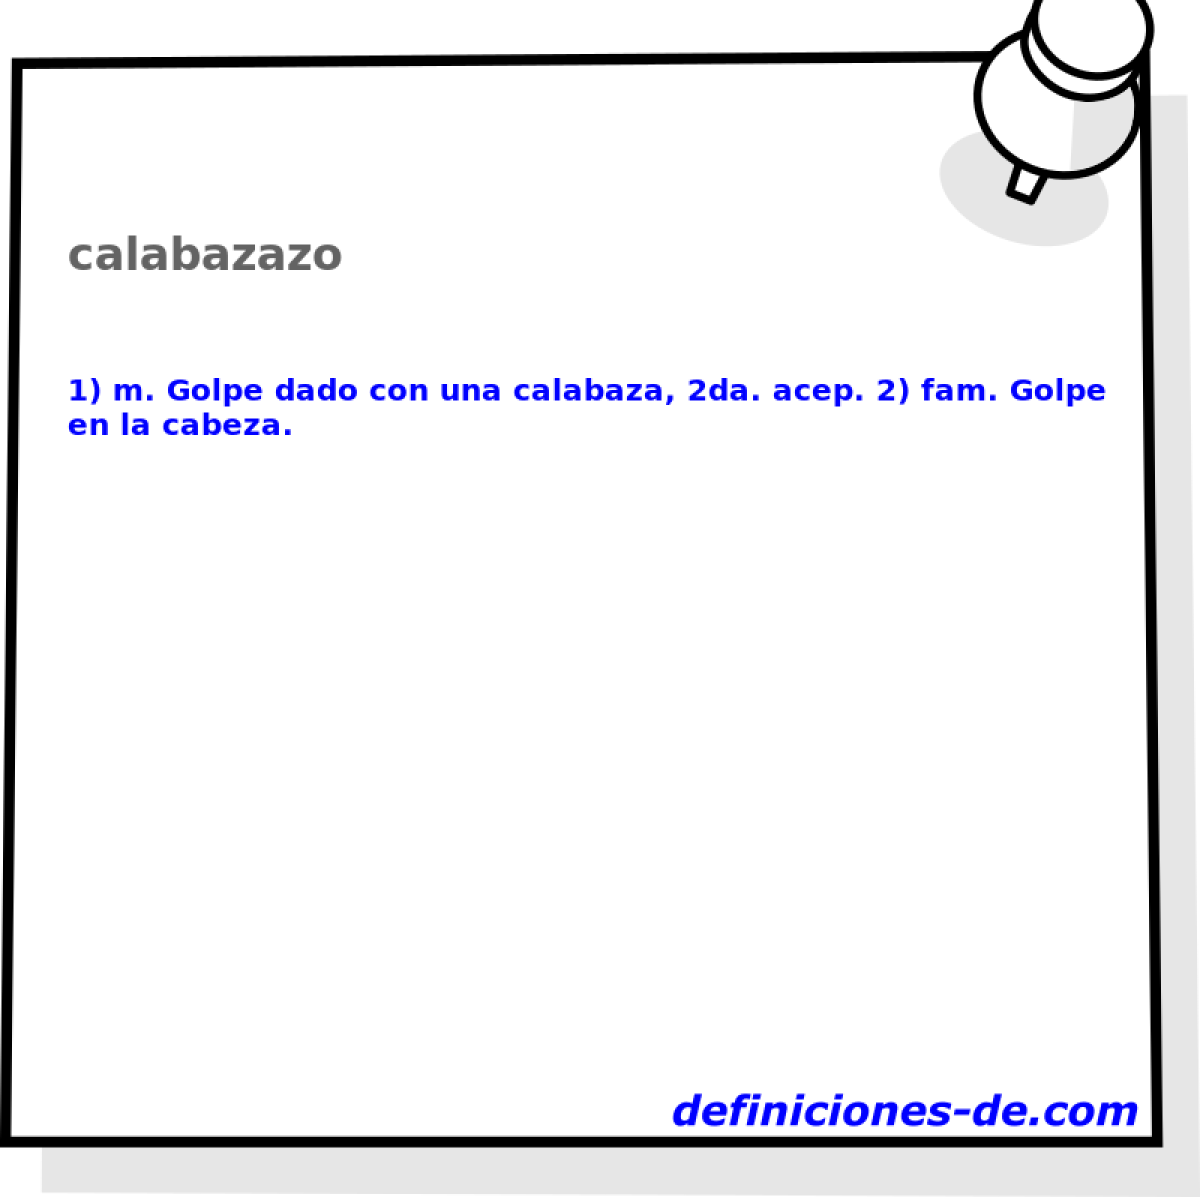 calabazazo 